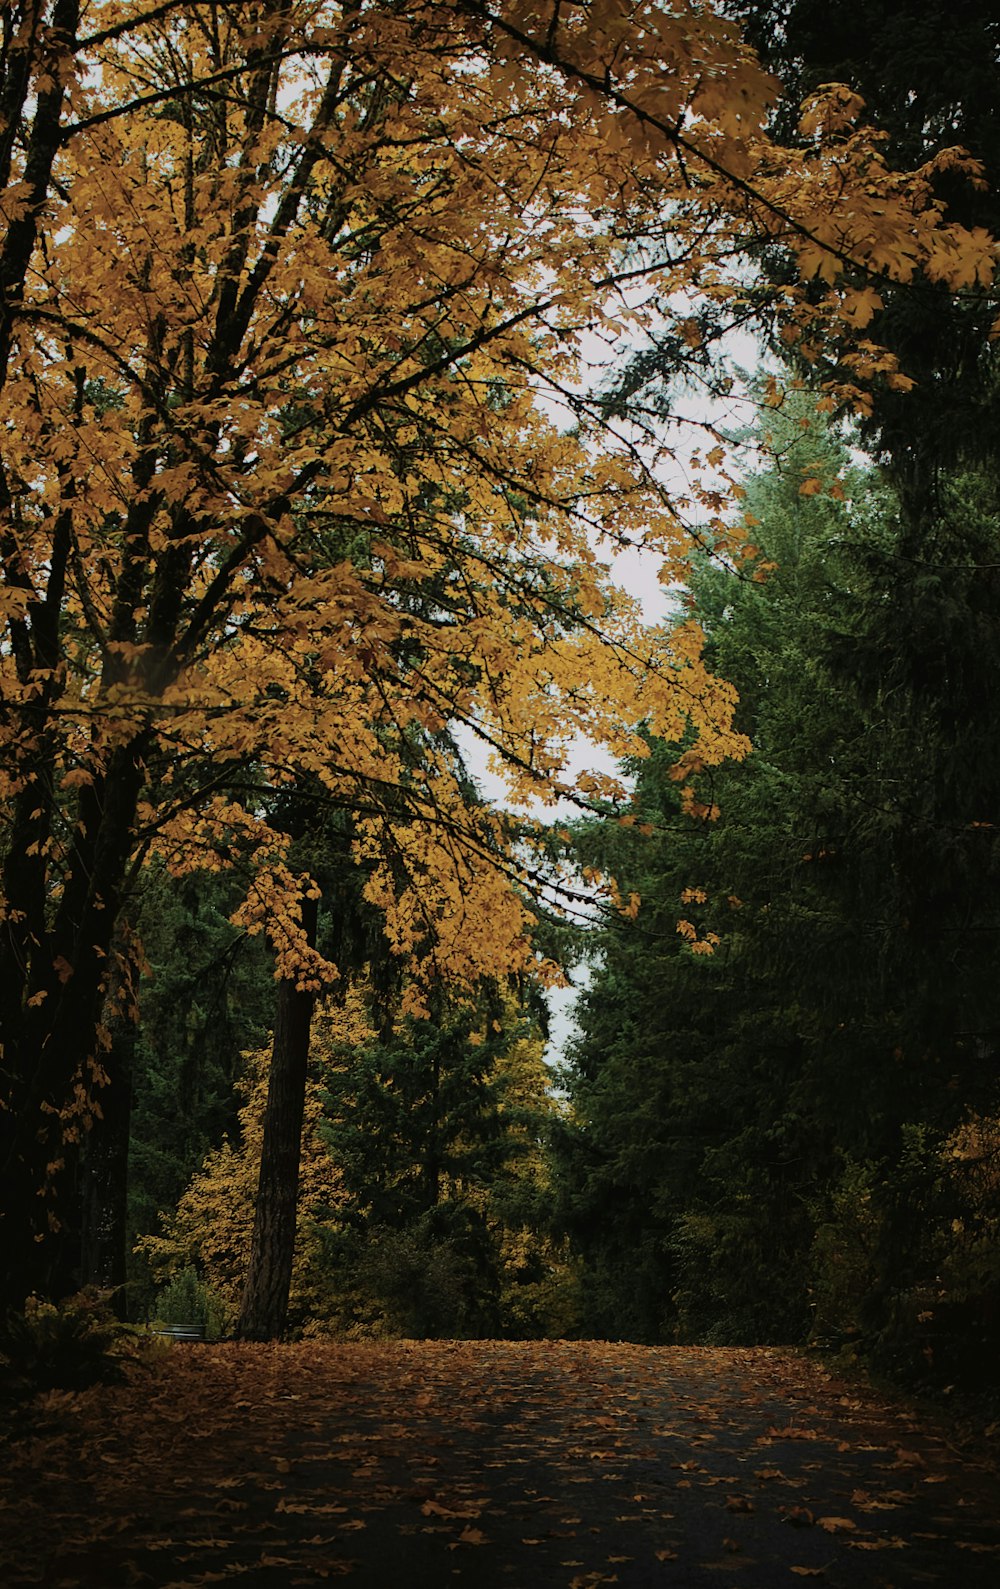 une route entourée d’arbres aux feuilles jaunes